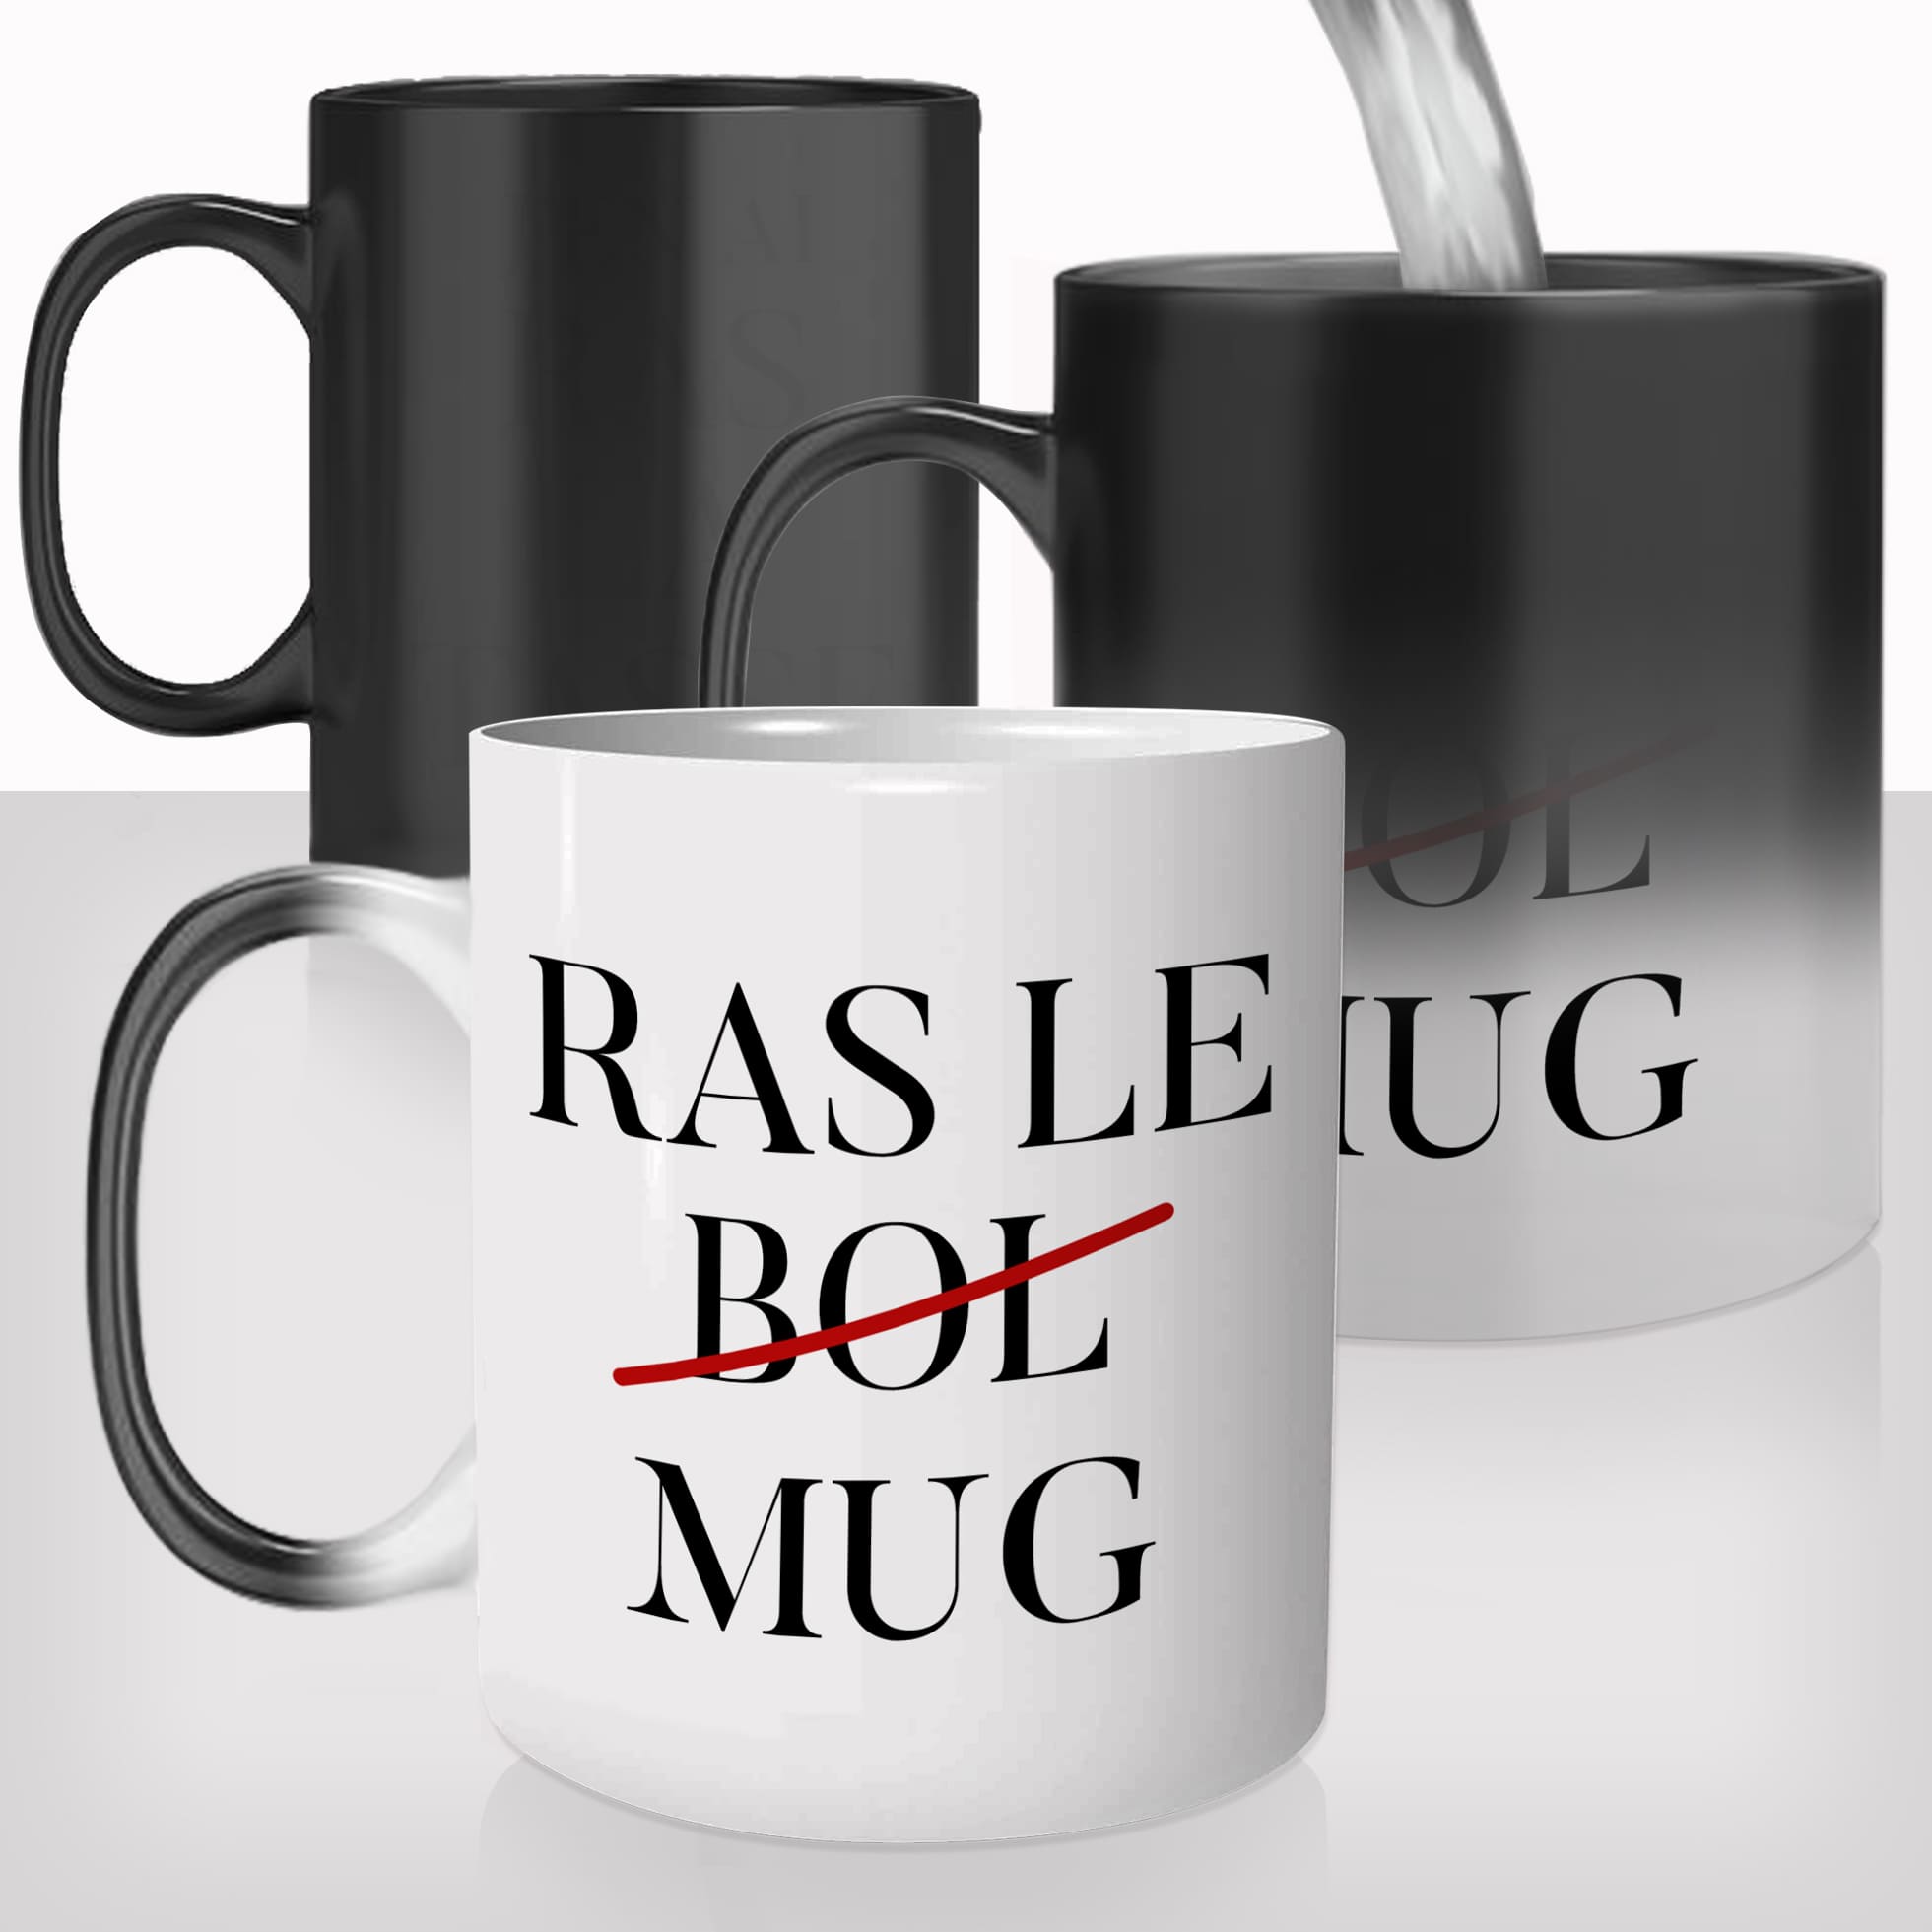 mug-magique-personnalisable-thermoreactif-thermique-tasse-ras-le-bol-mugs-expression-café-thé-chocolat-chaud-humour-fun-idée-cadeau-original